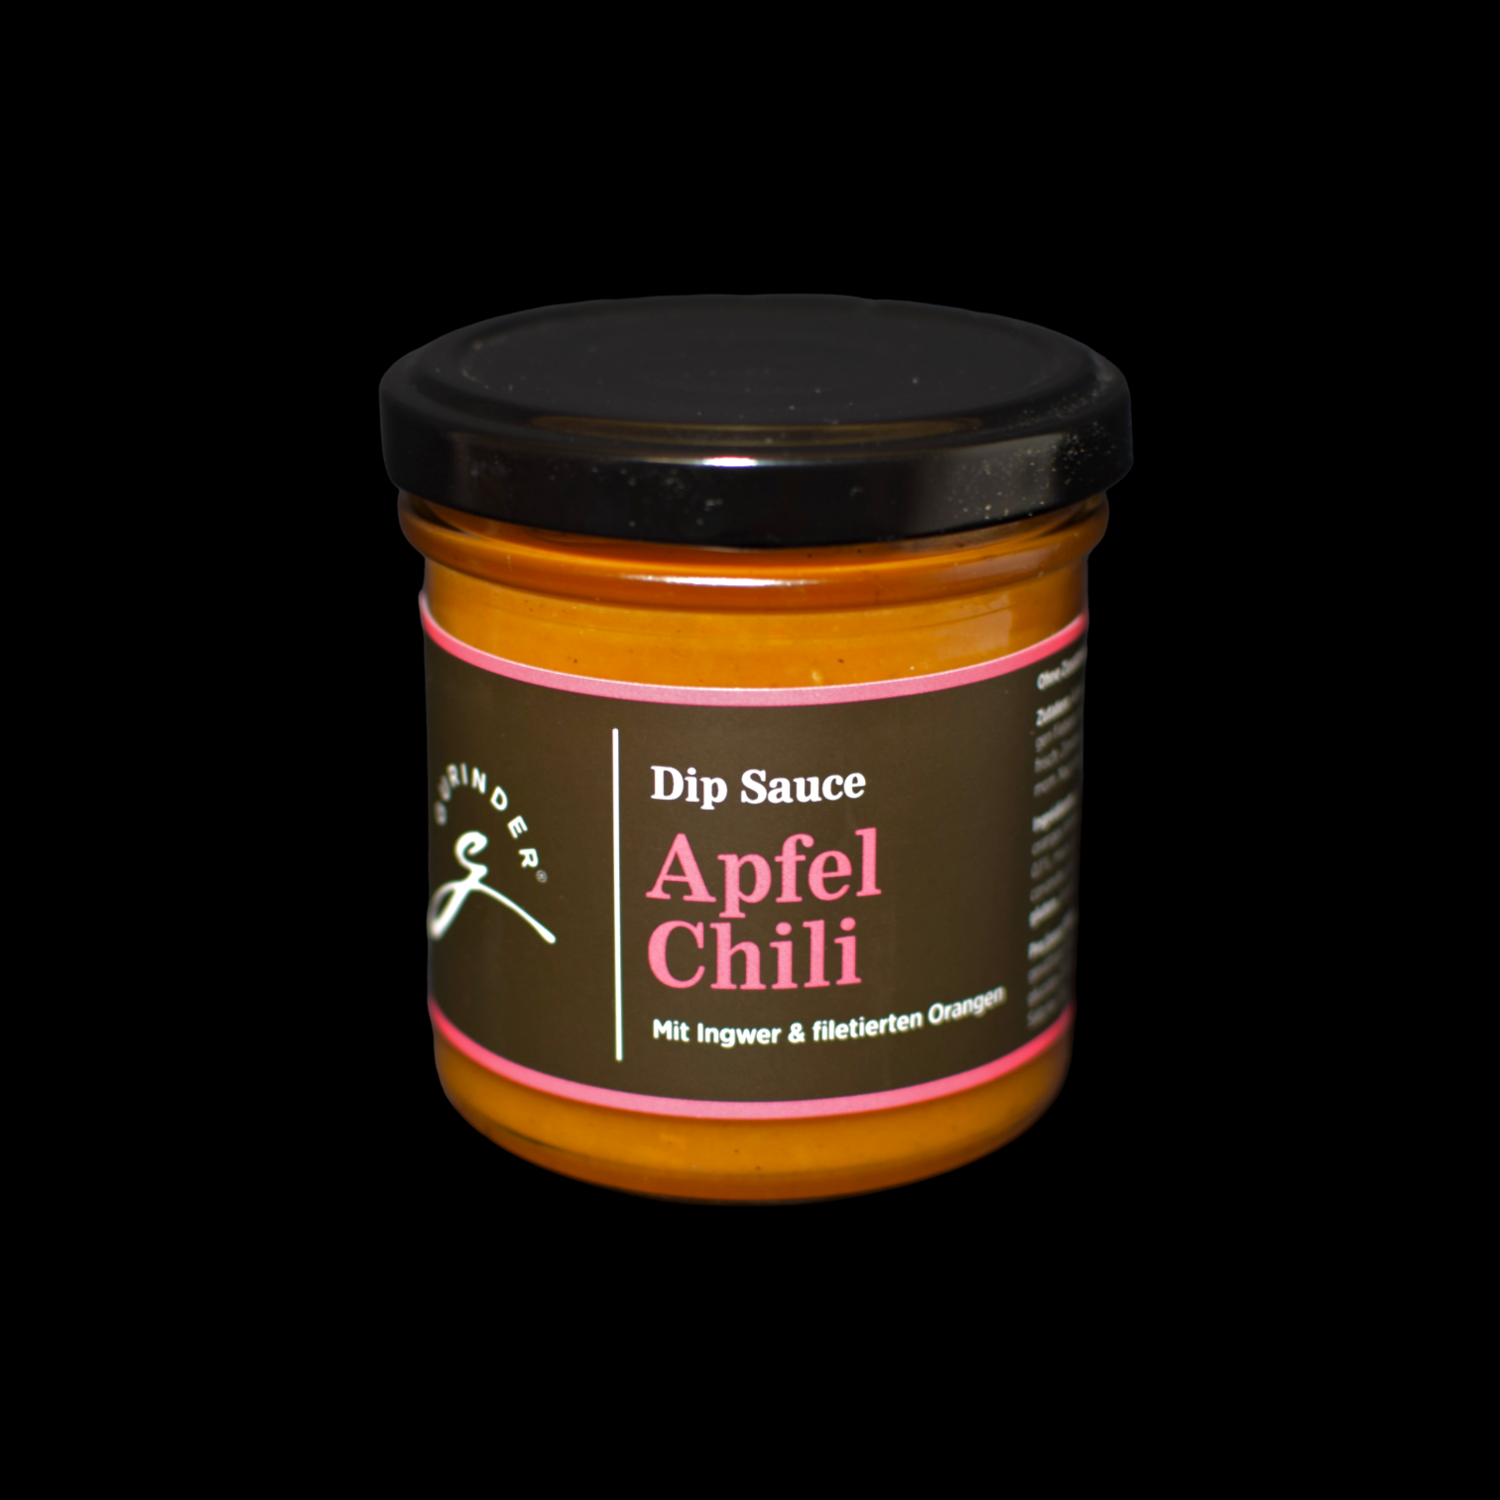 Dip Sauce Apfel Chili